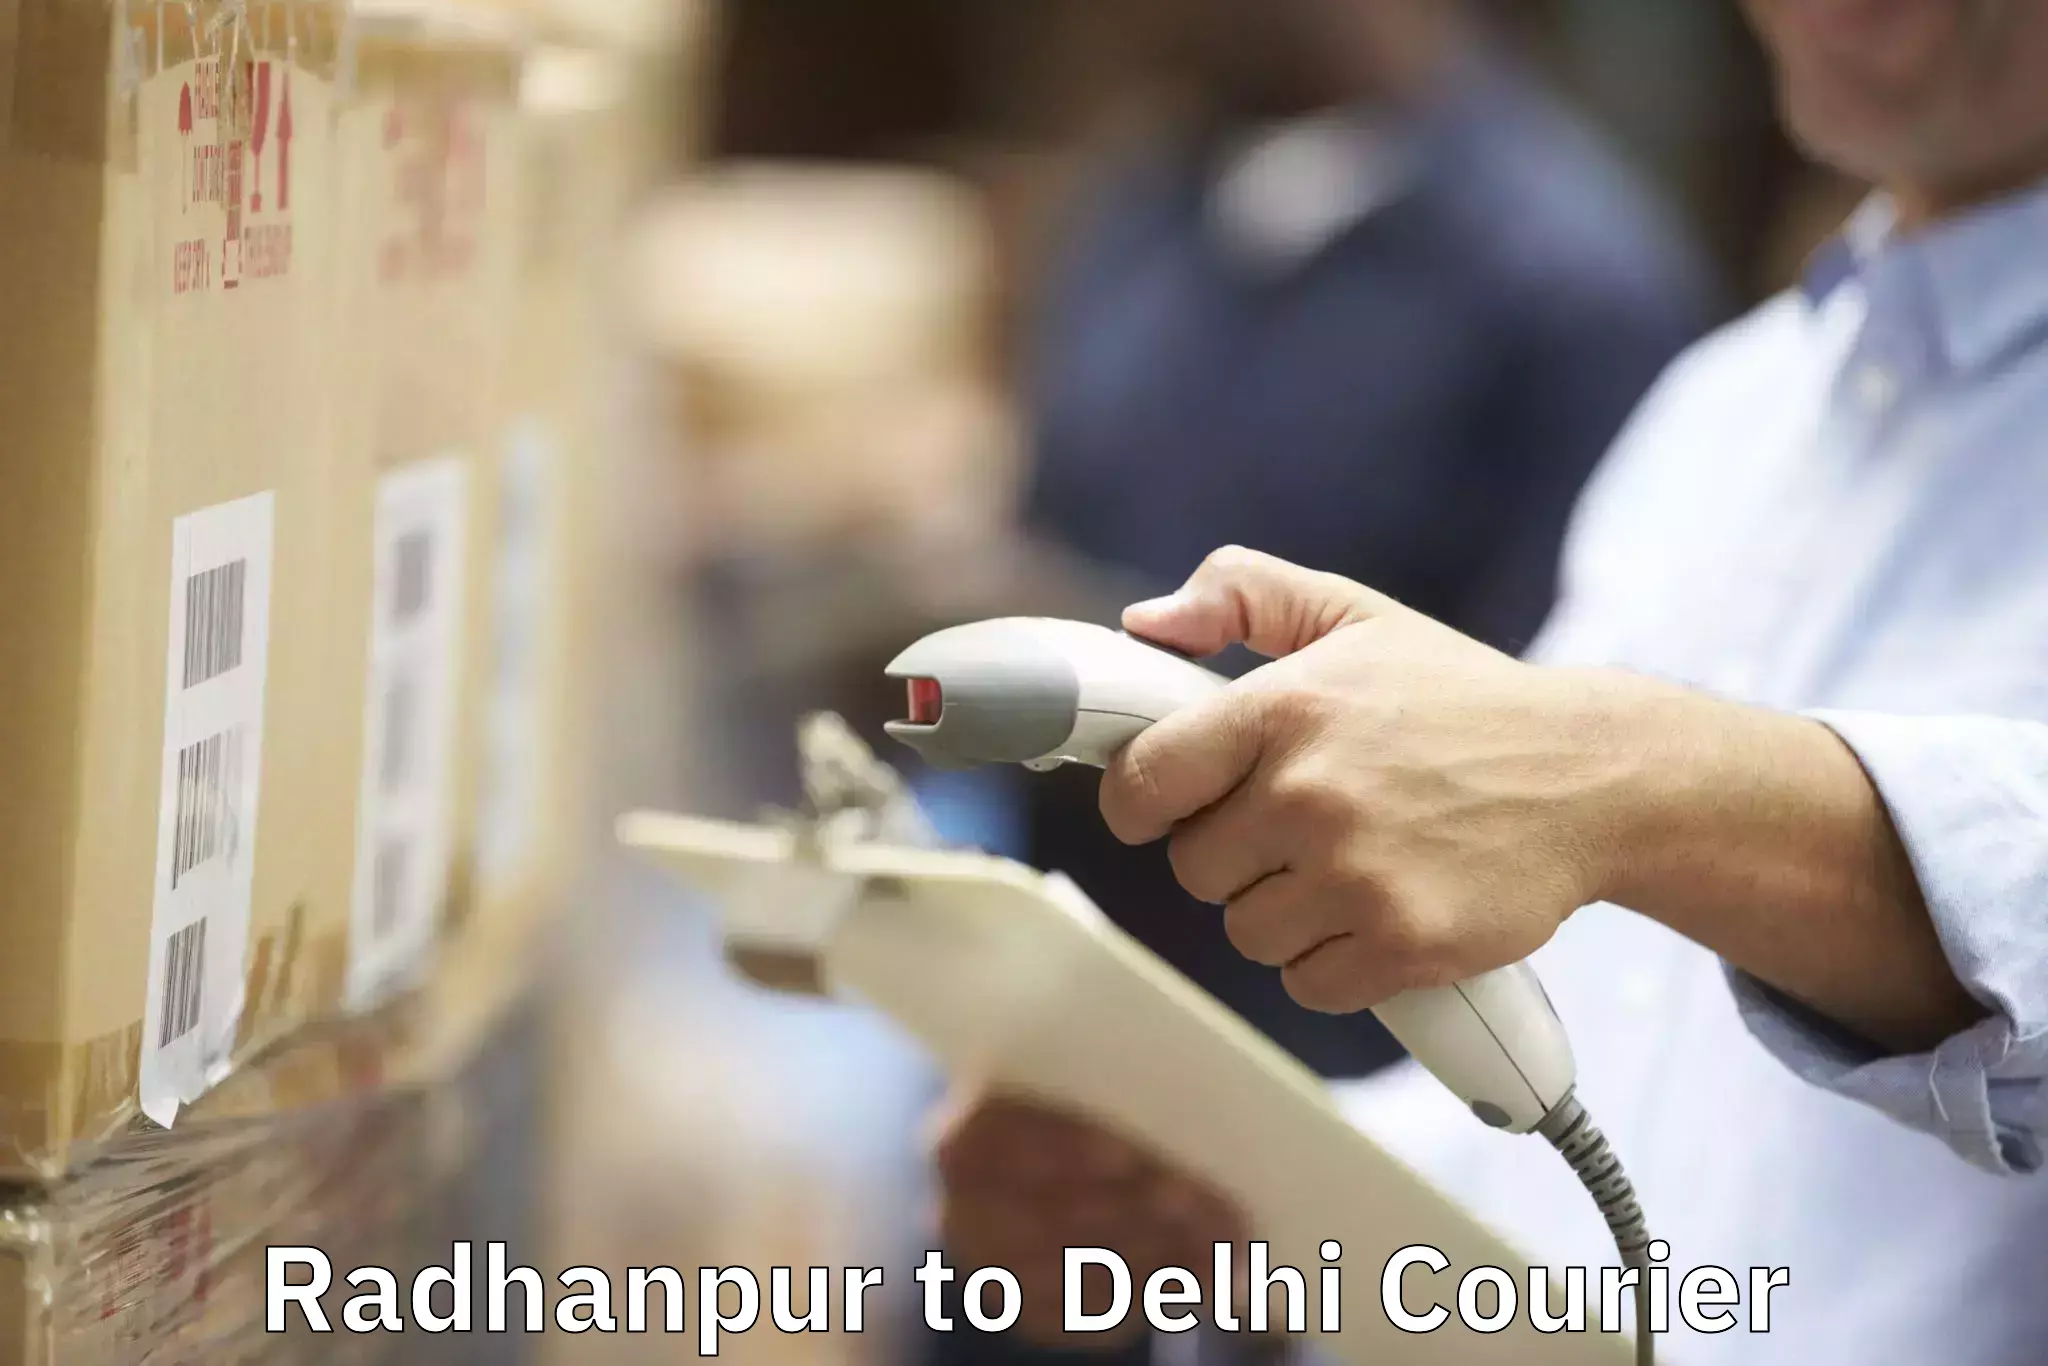 Furniture transport service Radhanpur to IIT Delhi